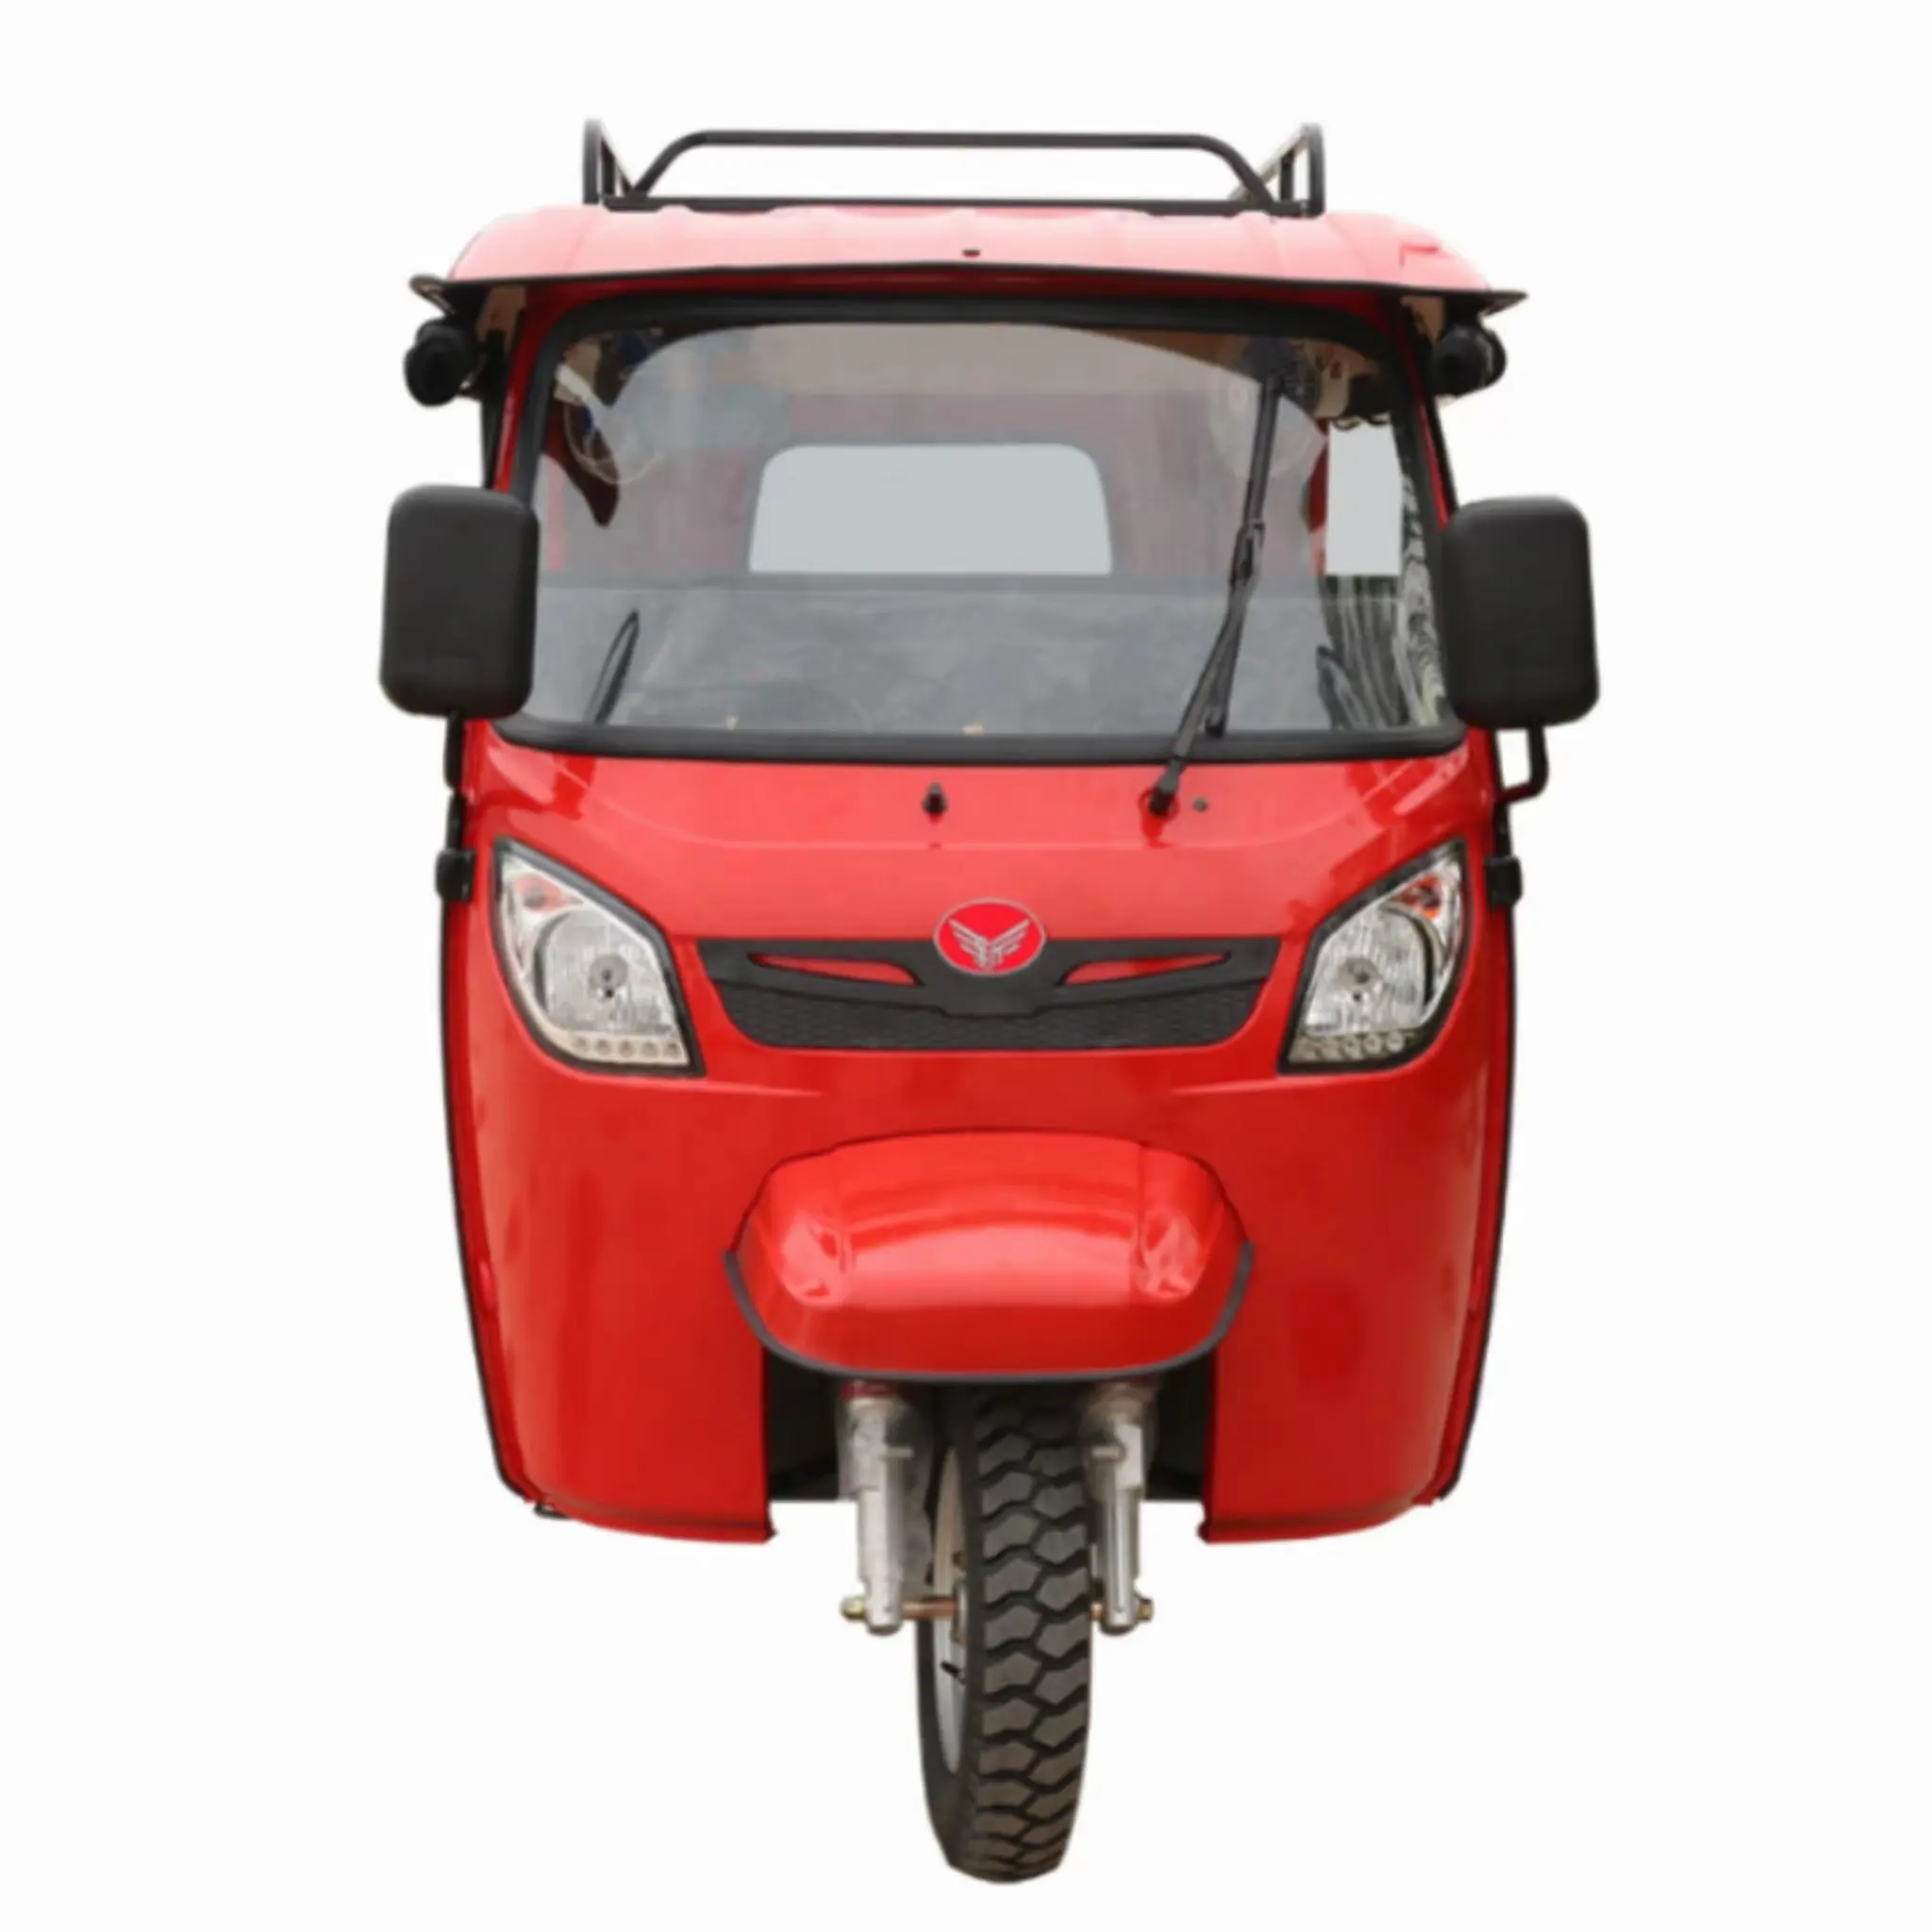 200 सीसी तीन पहिया वाहन 4 सीट यात्री टुक पेट्रोल इंजन बाजार में भारत में पेट्रोल की कीमत